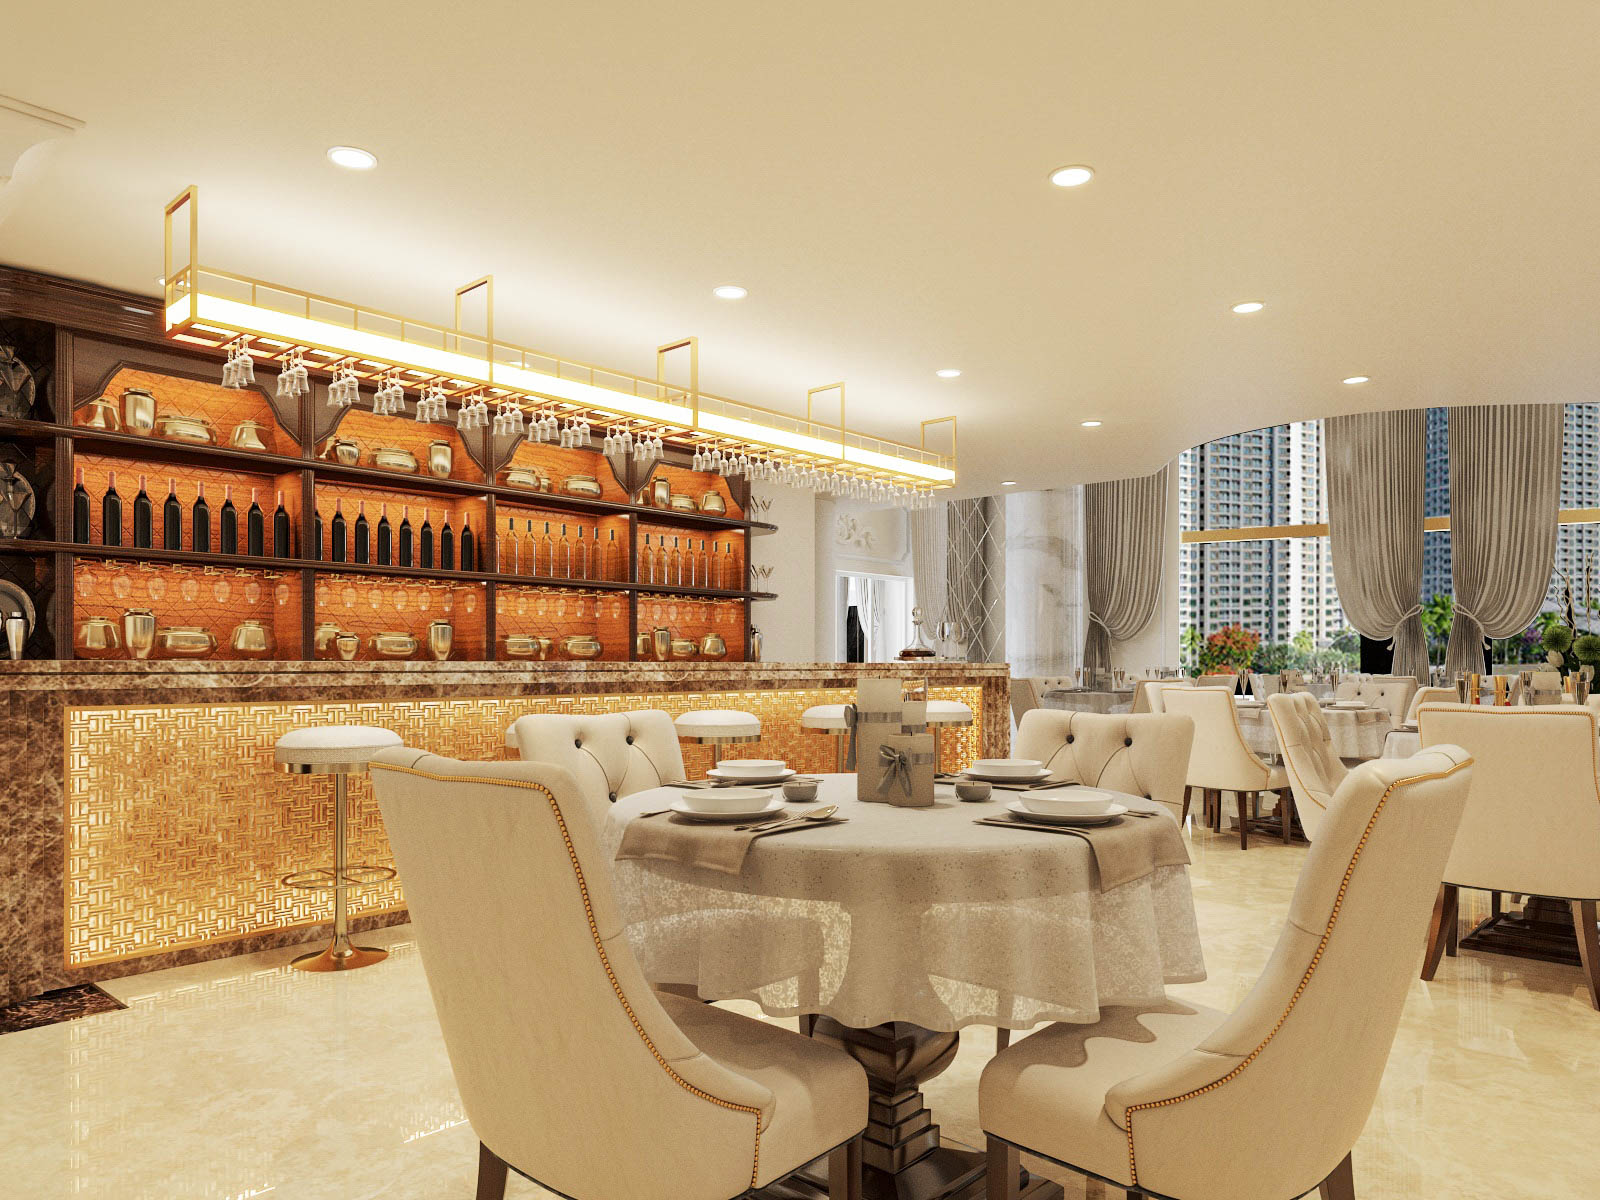 hình ảnh không gian ăn uống bên trong khách sạn 4 sao ở Hạ Long với những bộ bàn ghế màu trắng sáng êm ái, sang trọng